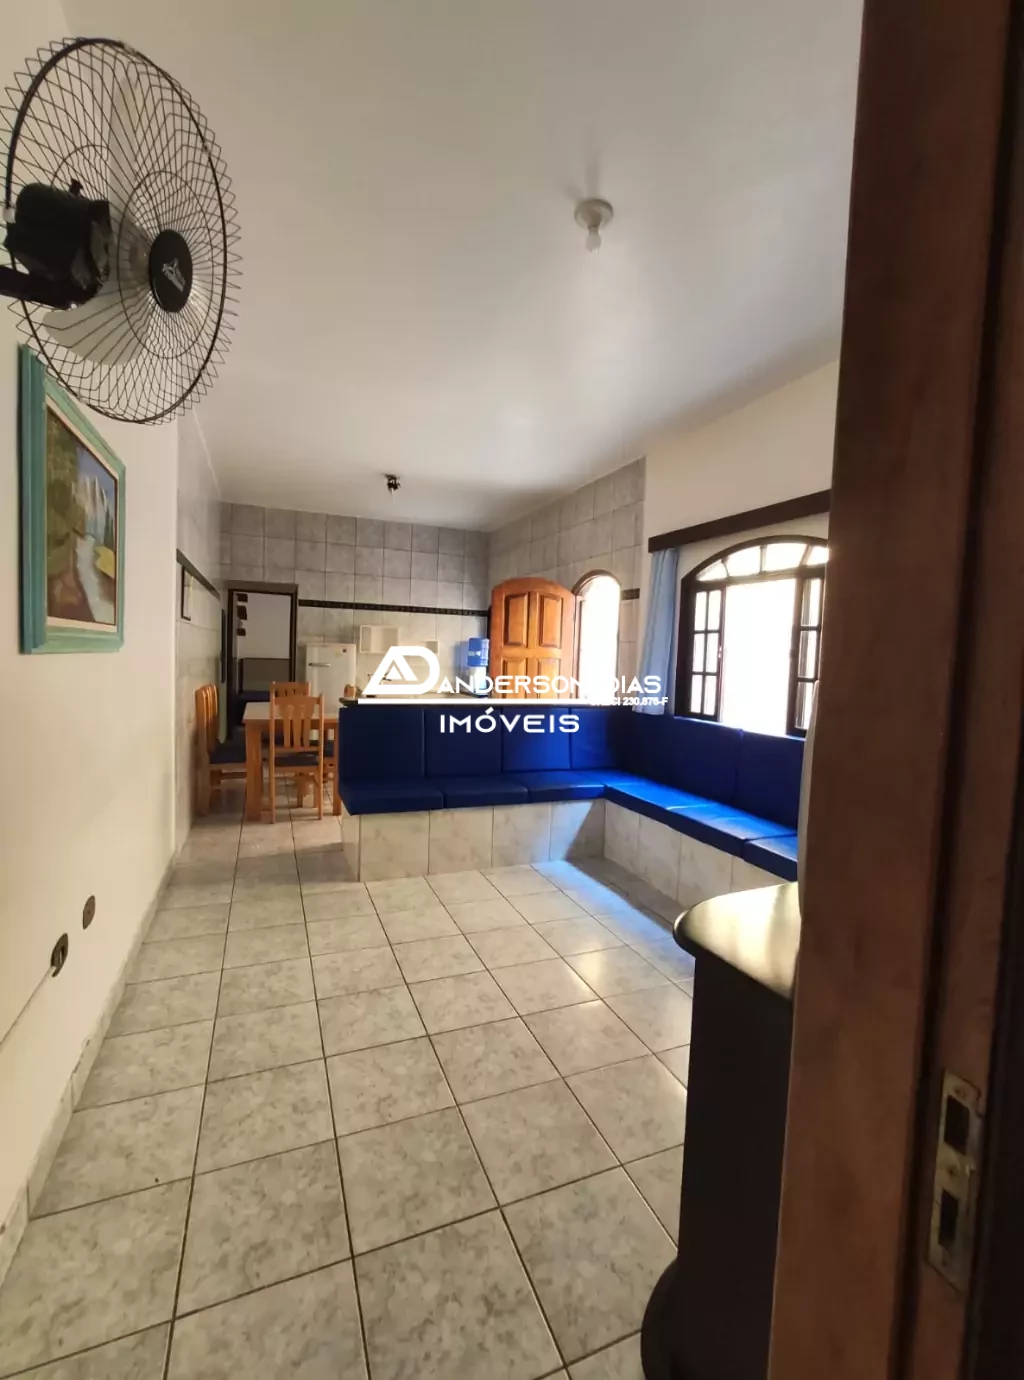 Casa com 3 dormitórios, com 113m² à venda por apenas R$380.000,00 - Martim de Sá- Caraguatatuba/SP